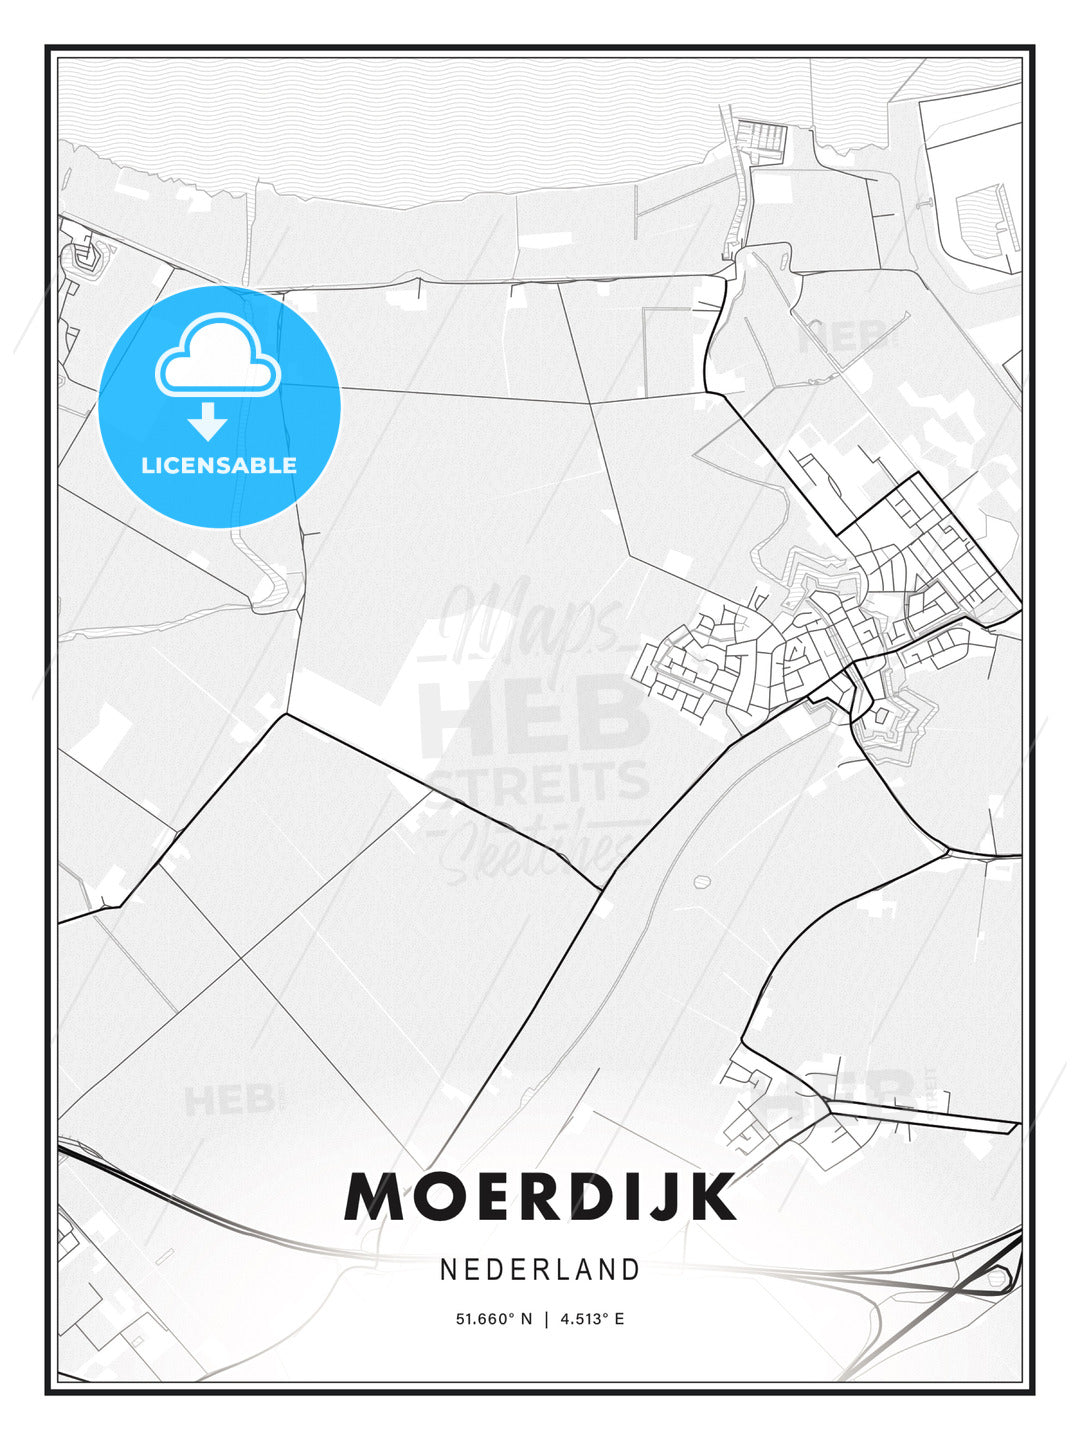 Moerdijk, Netherlands, Modern Print Template in Various Formats - HEBSTREITS Sketches